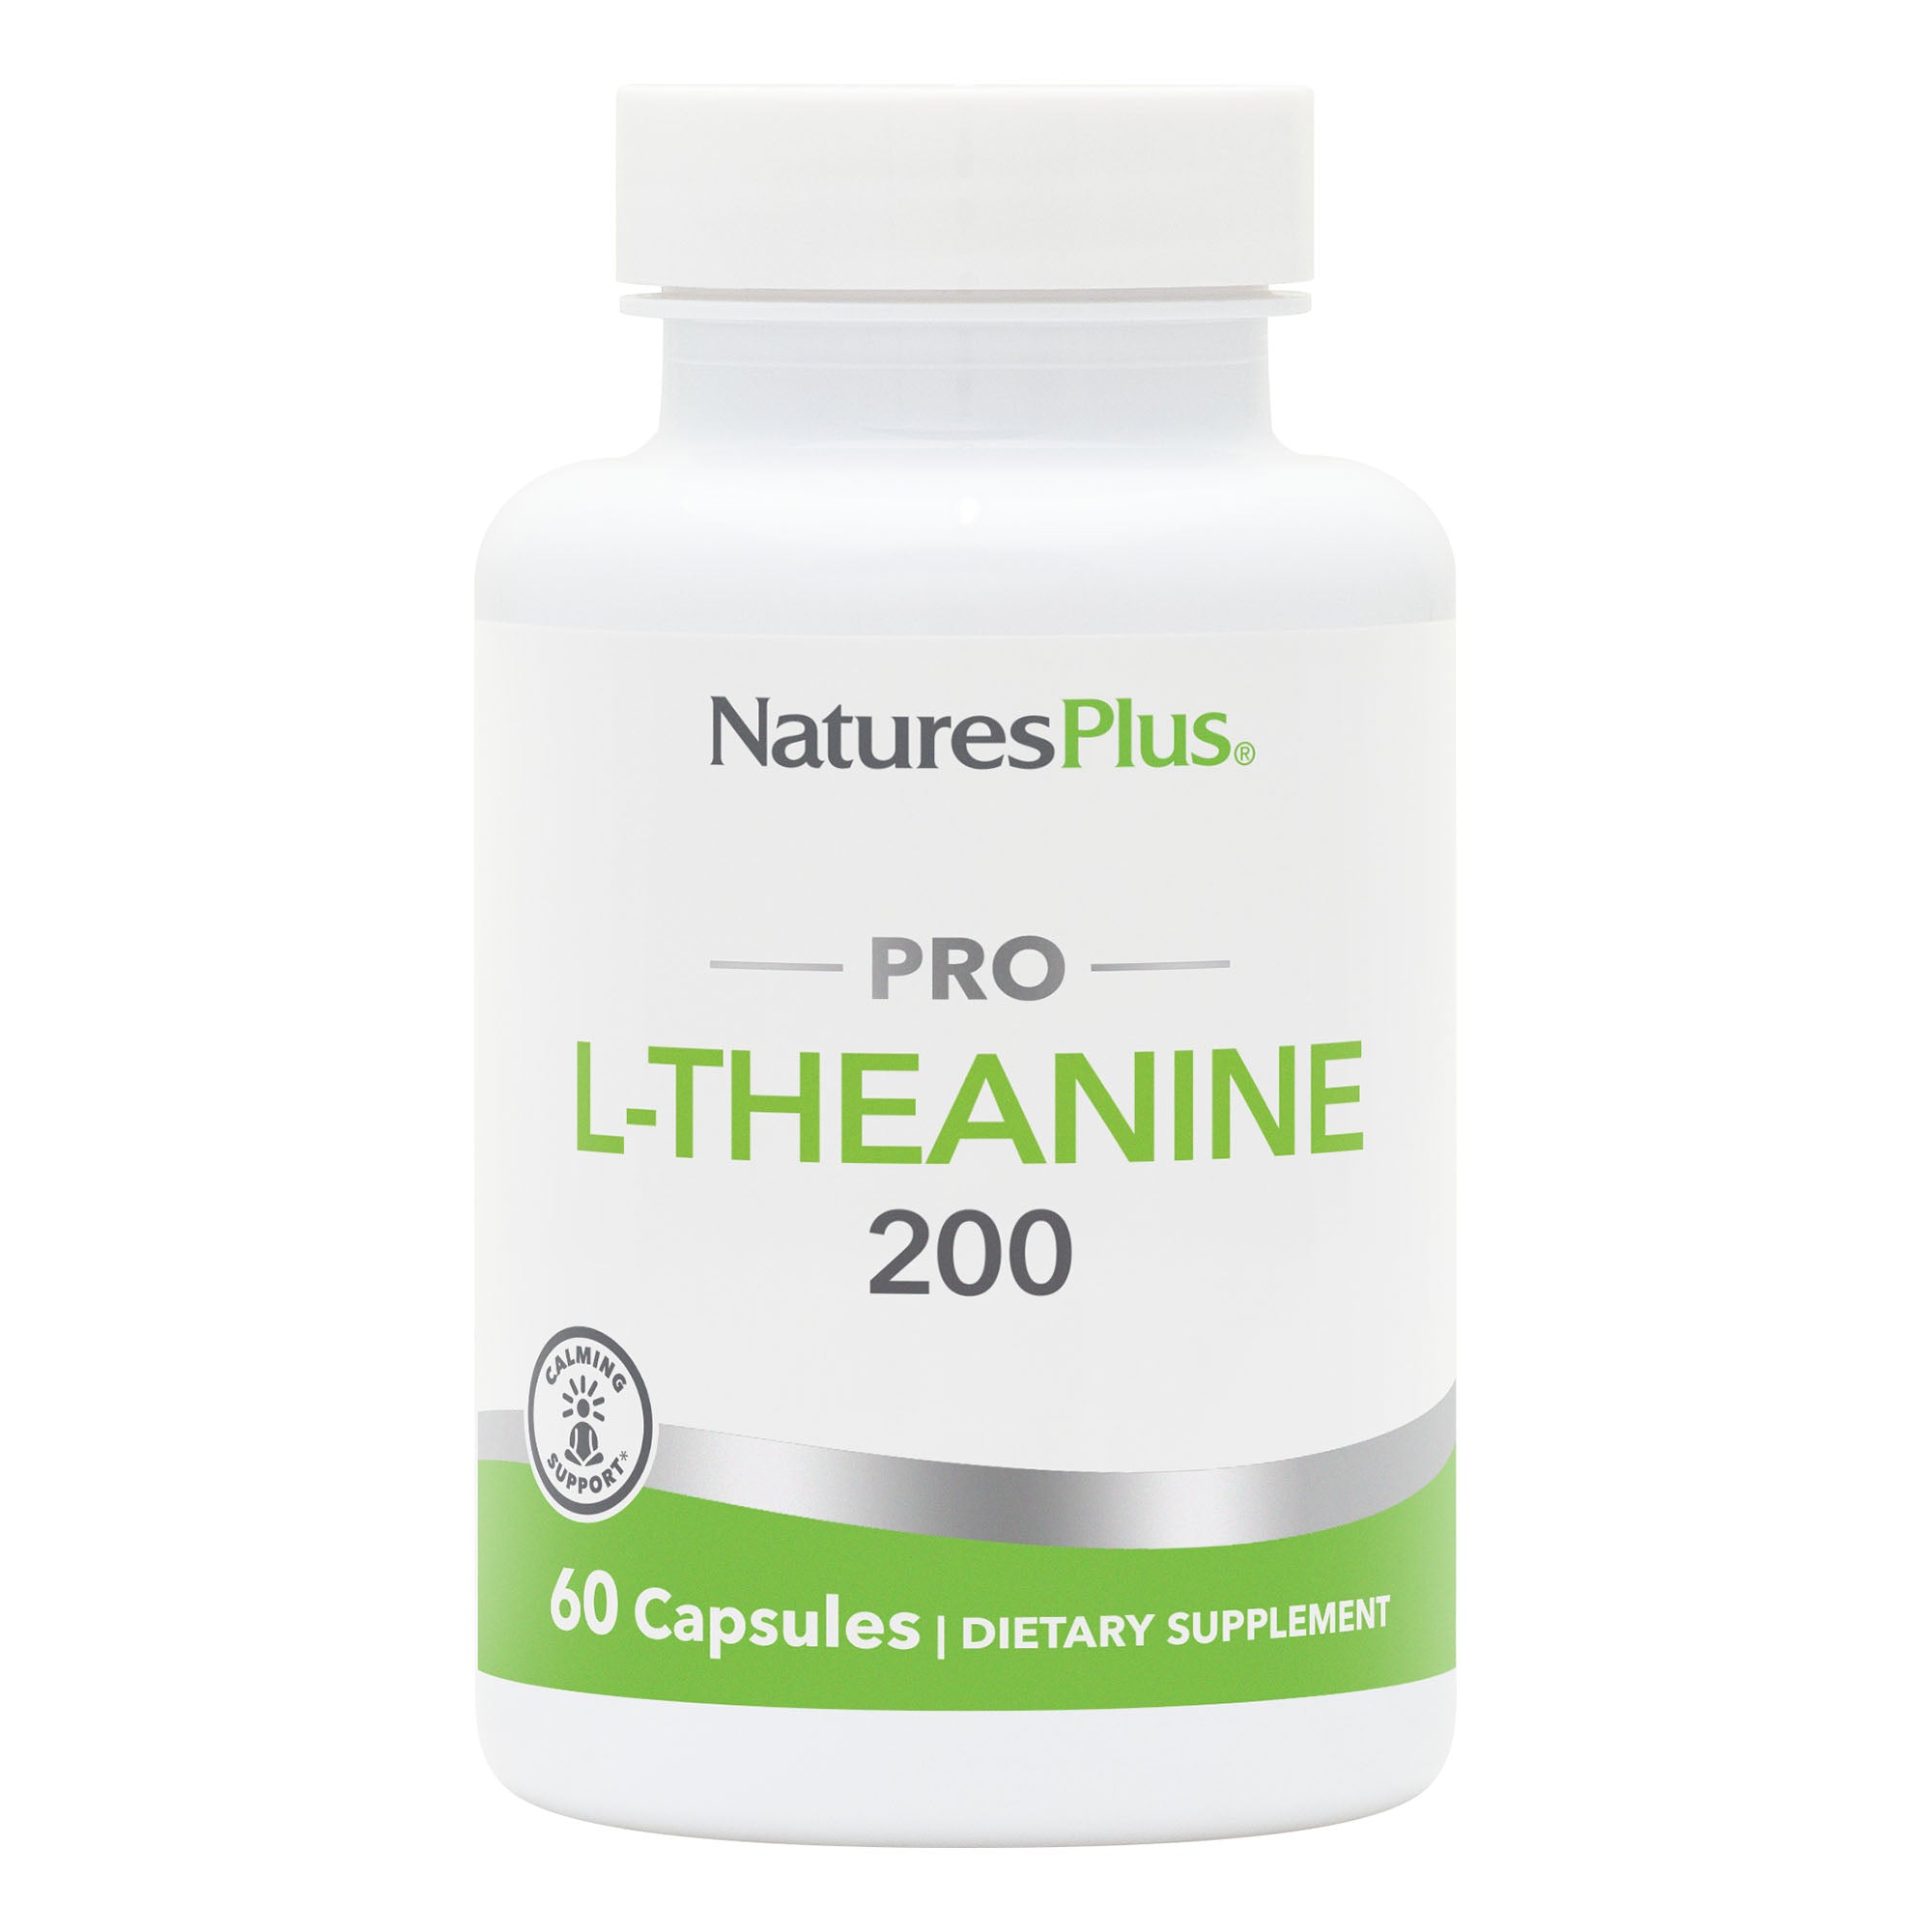 NaturesPlus PRO L-Theanine